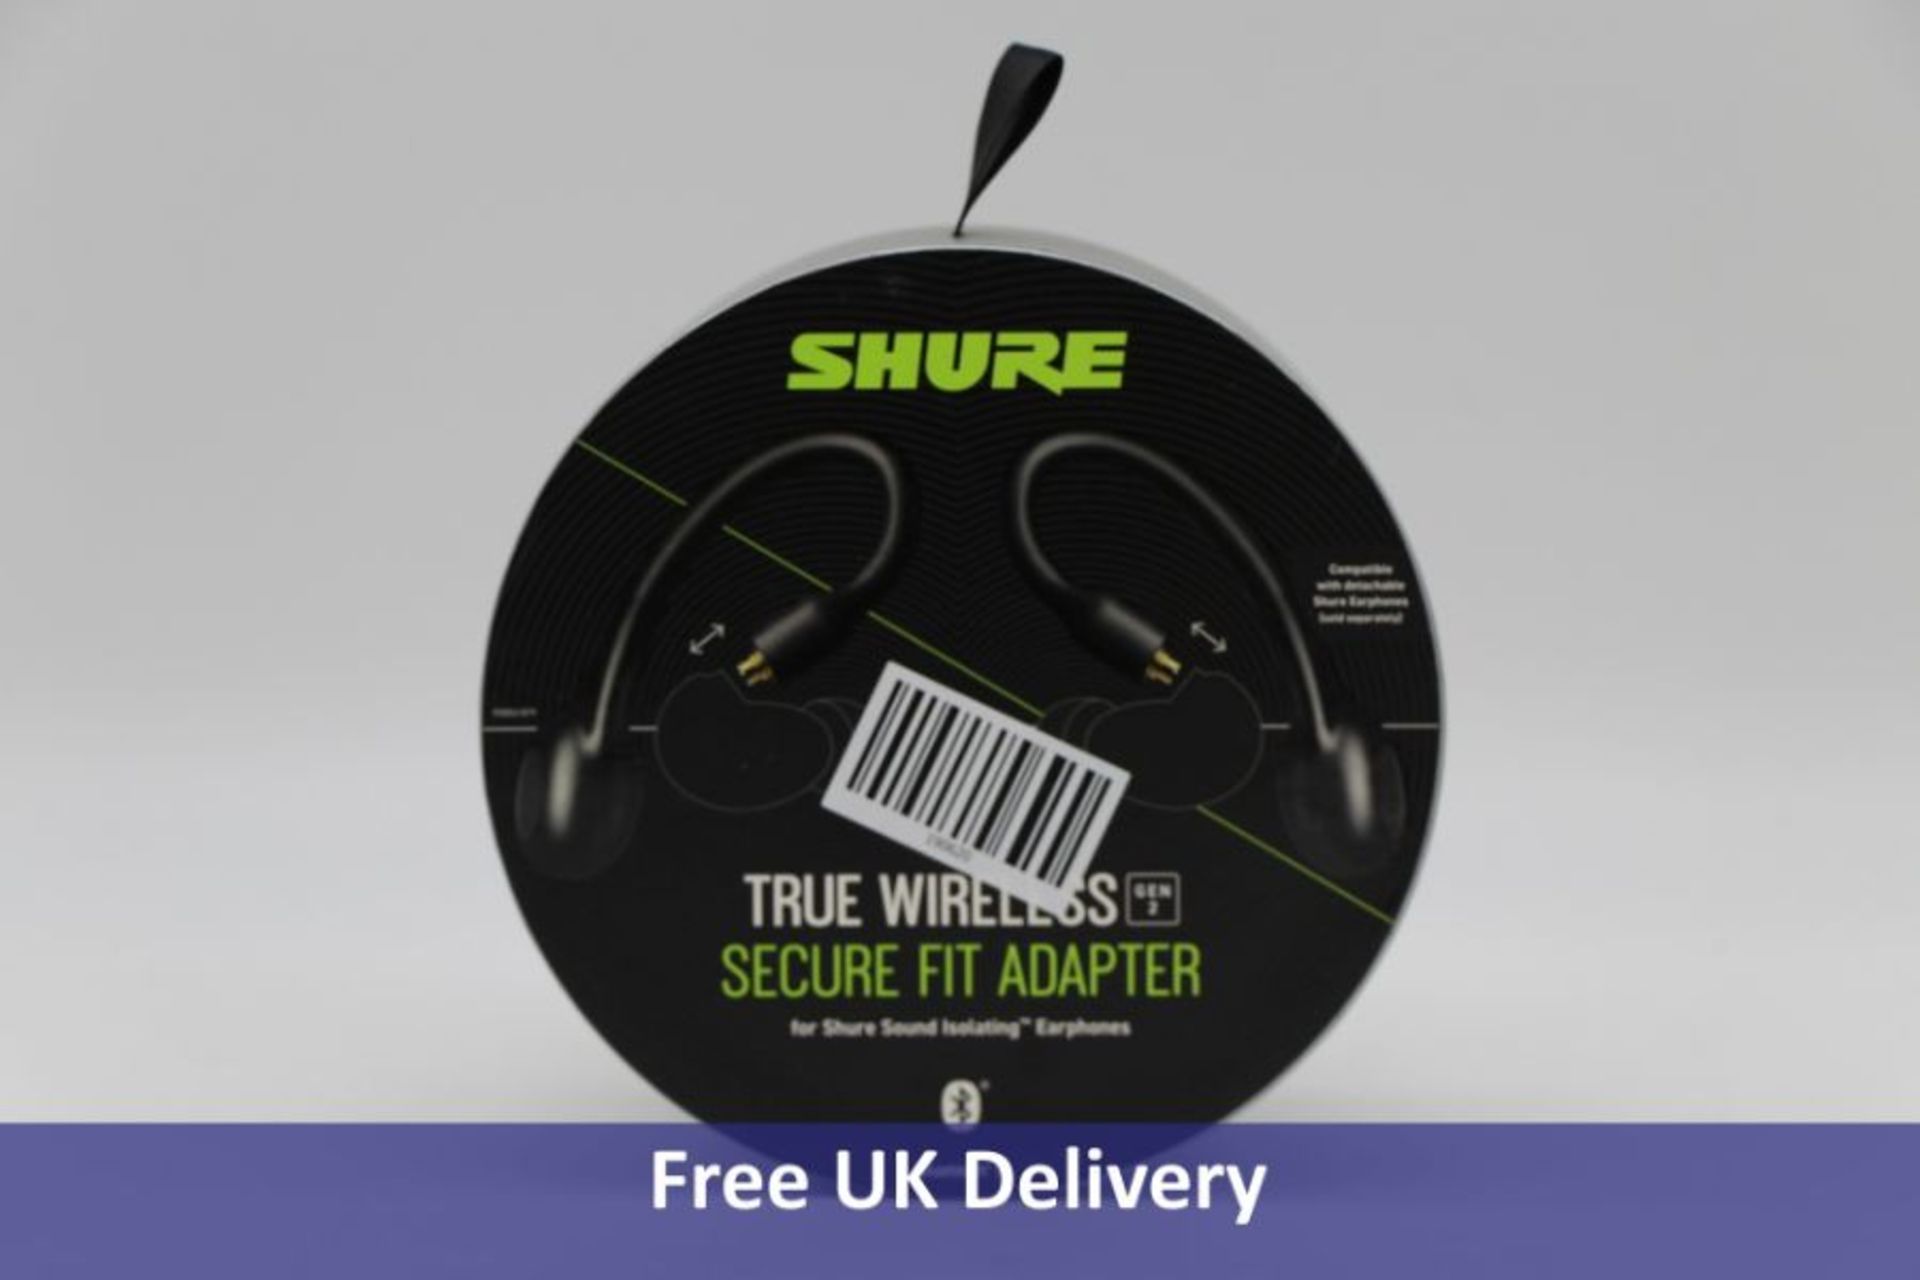 Shure True Wireless Earphone Secure Fit Adapter, Black - Image 2 of 3